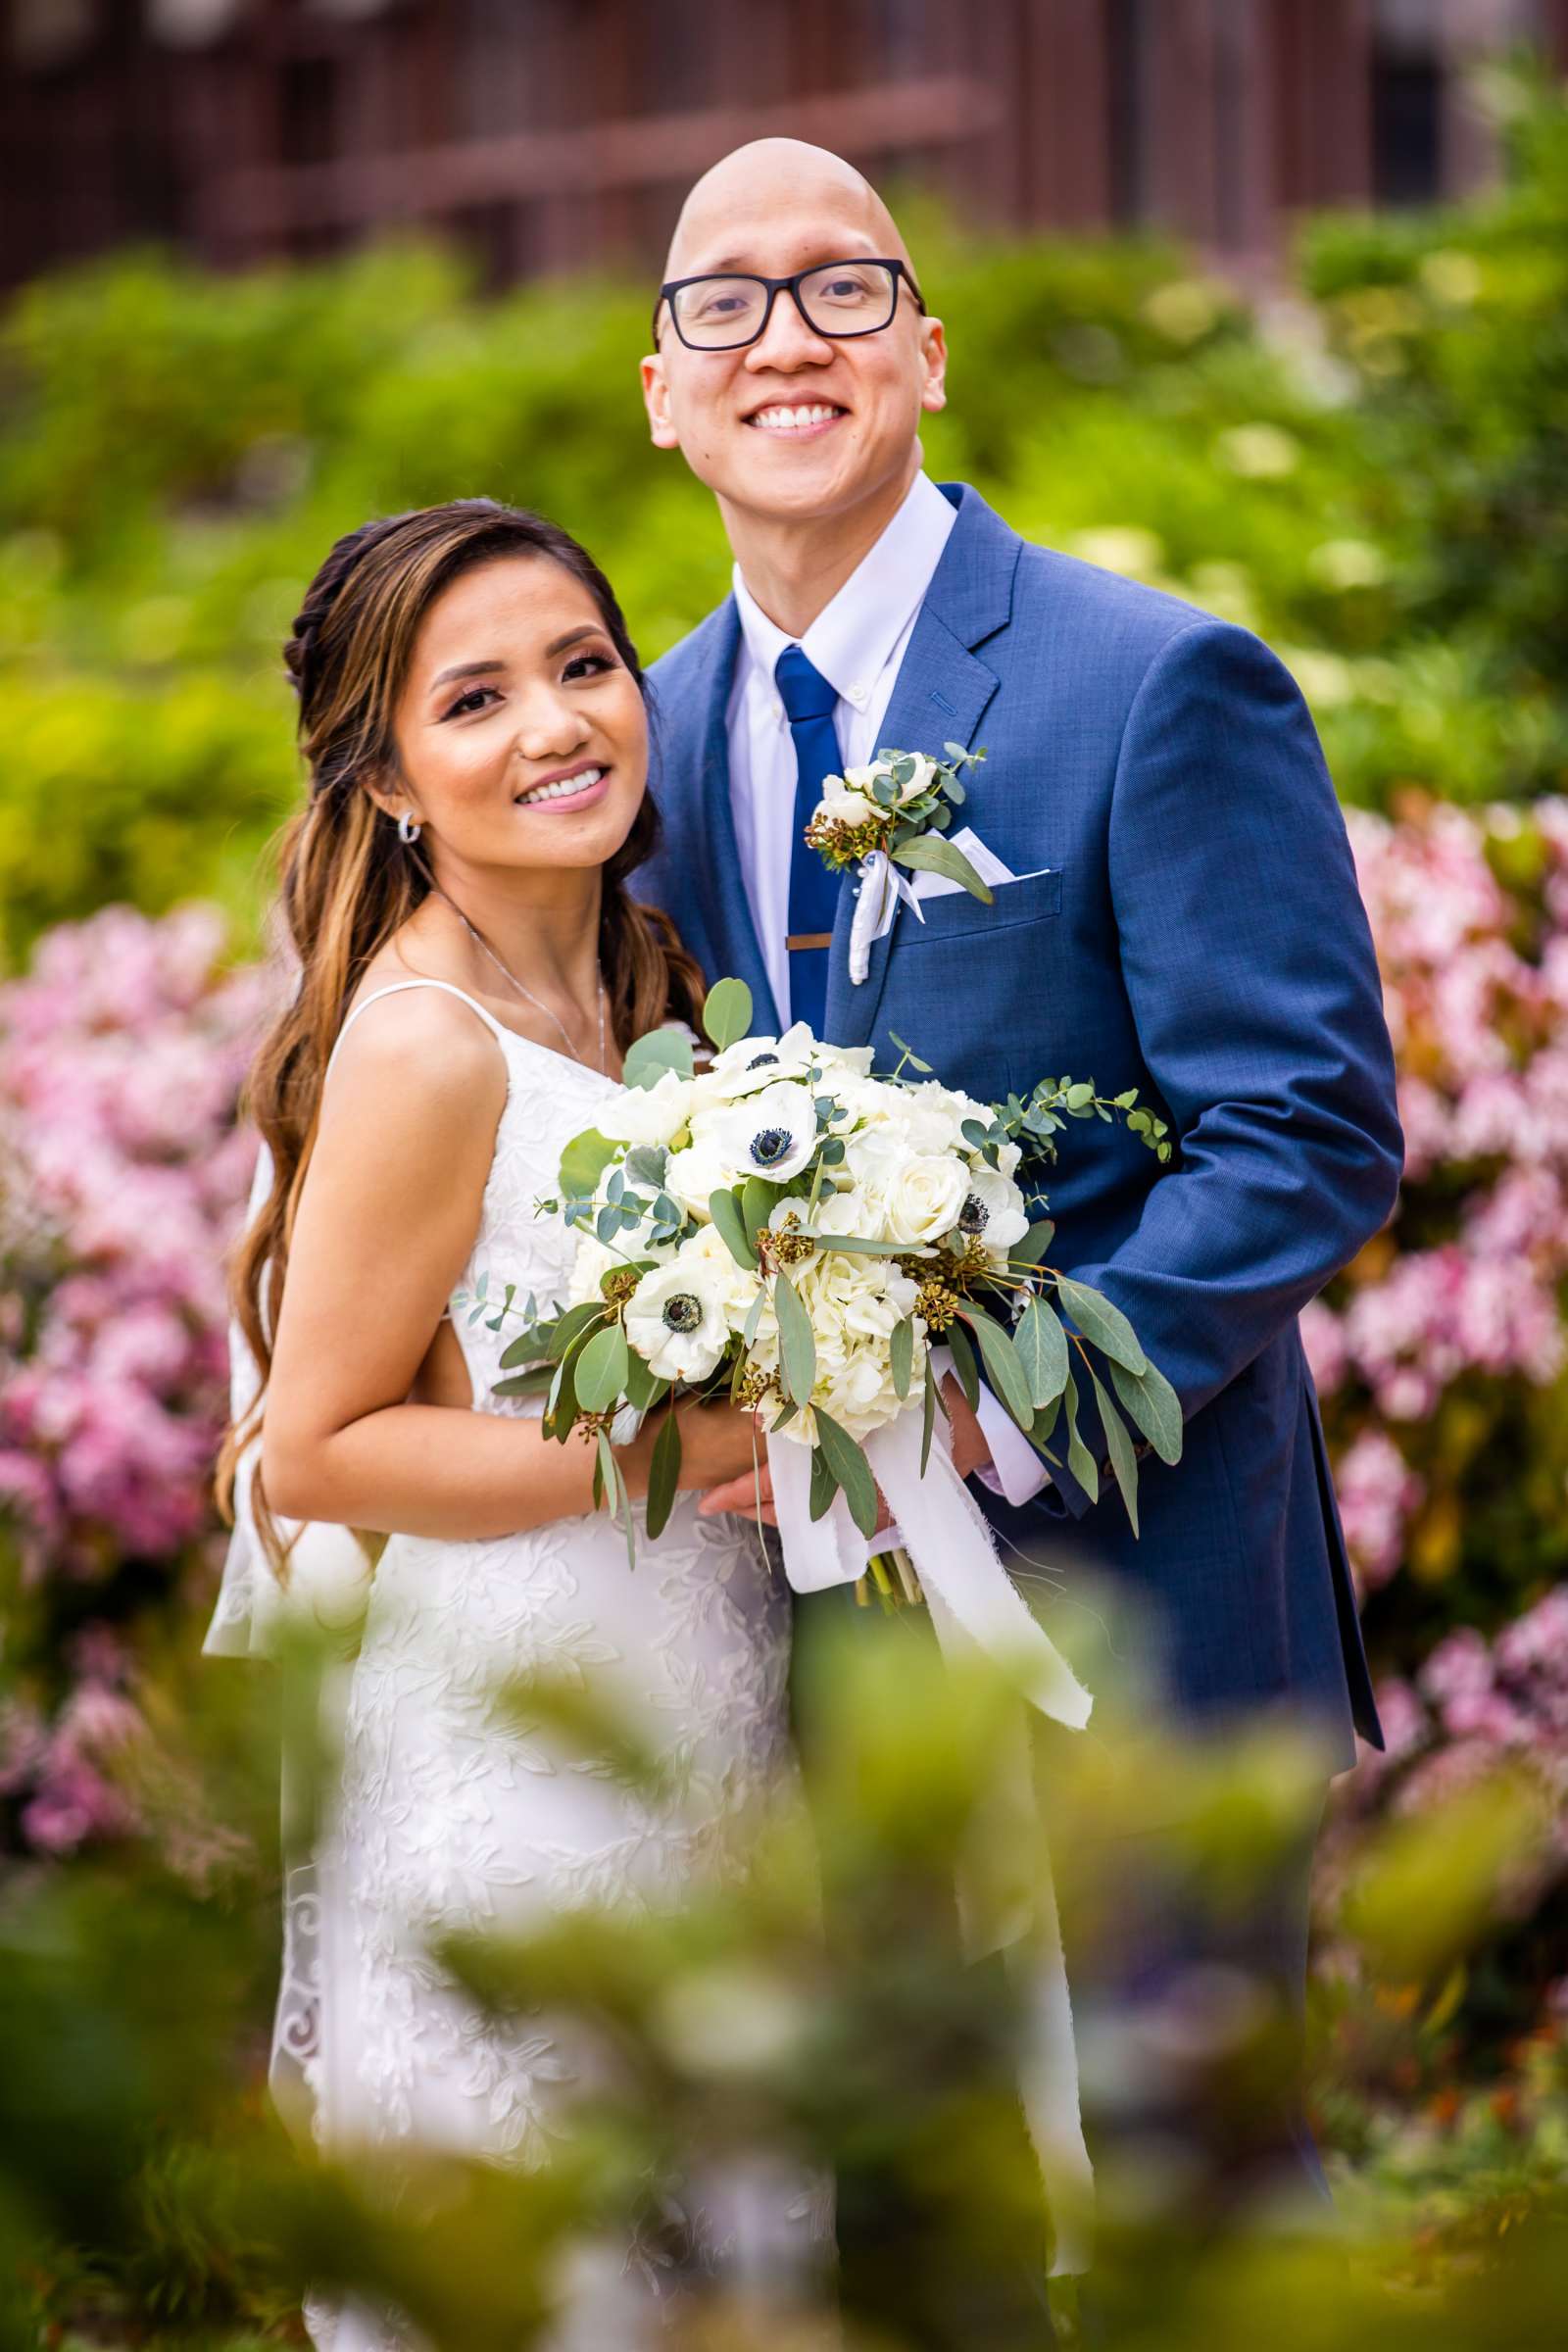 La Jolla Shores Hotel Wedding, Kim and Evan Wedding Photo #2 by True Photography